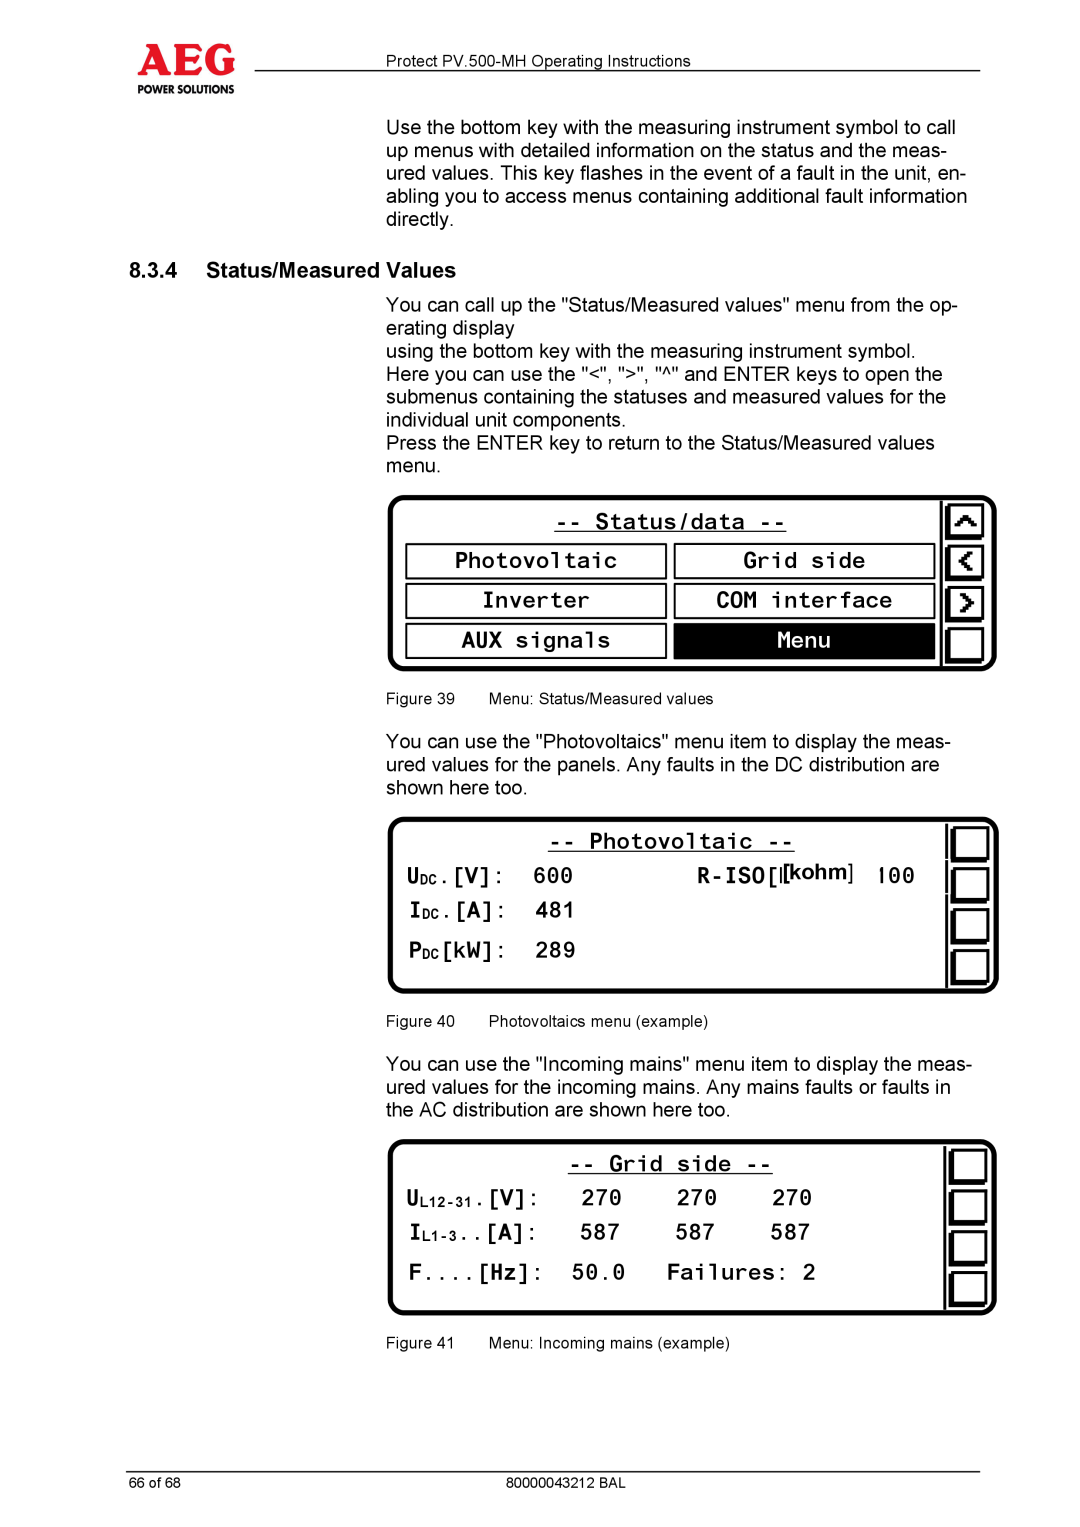 AEG PV.500-MH manual Status/data, Menu 